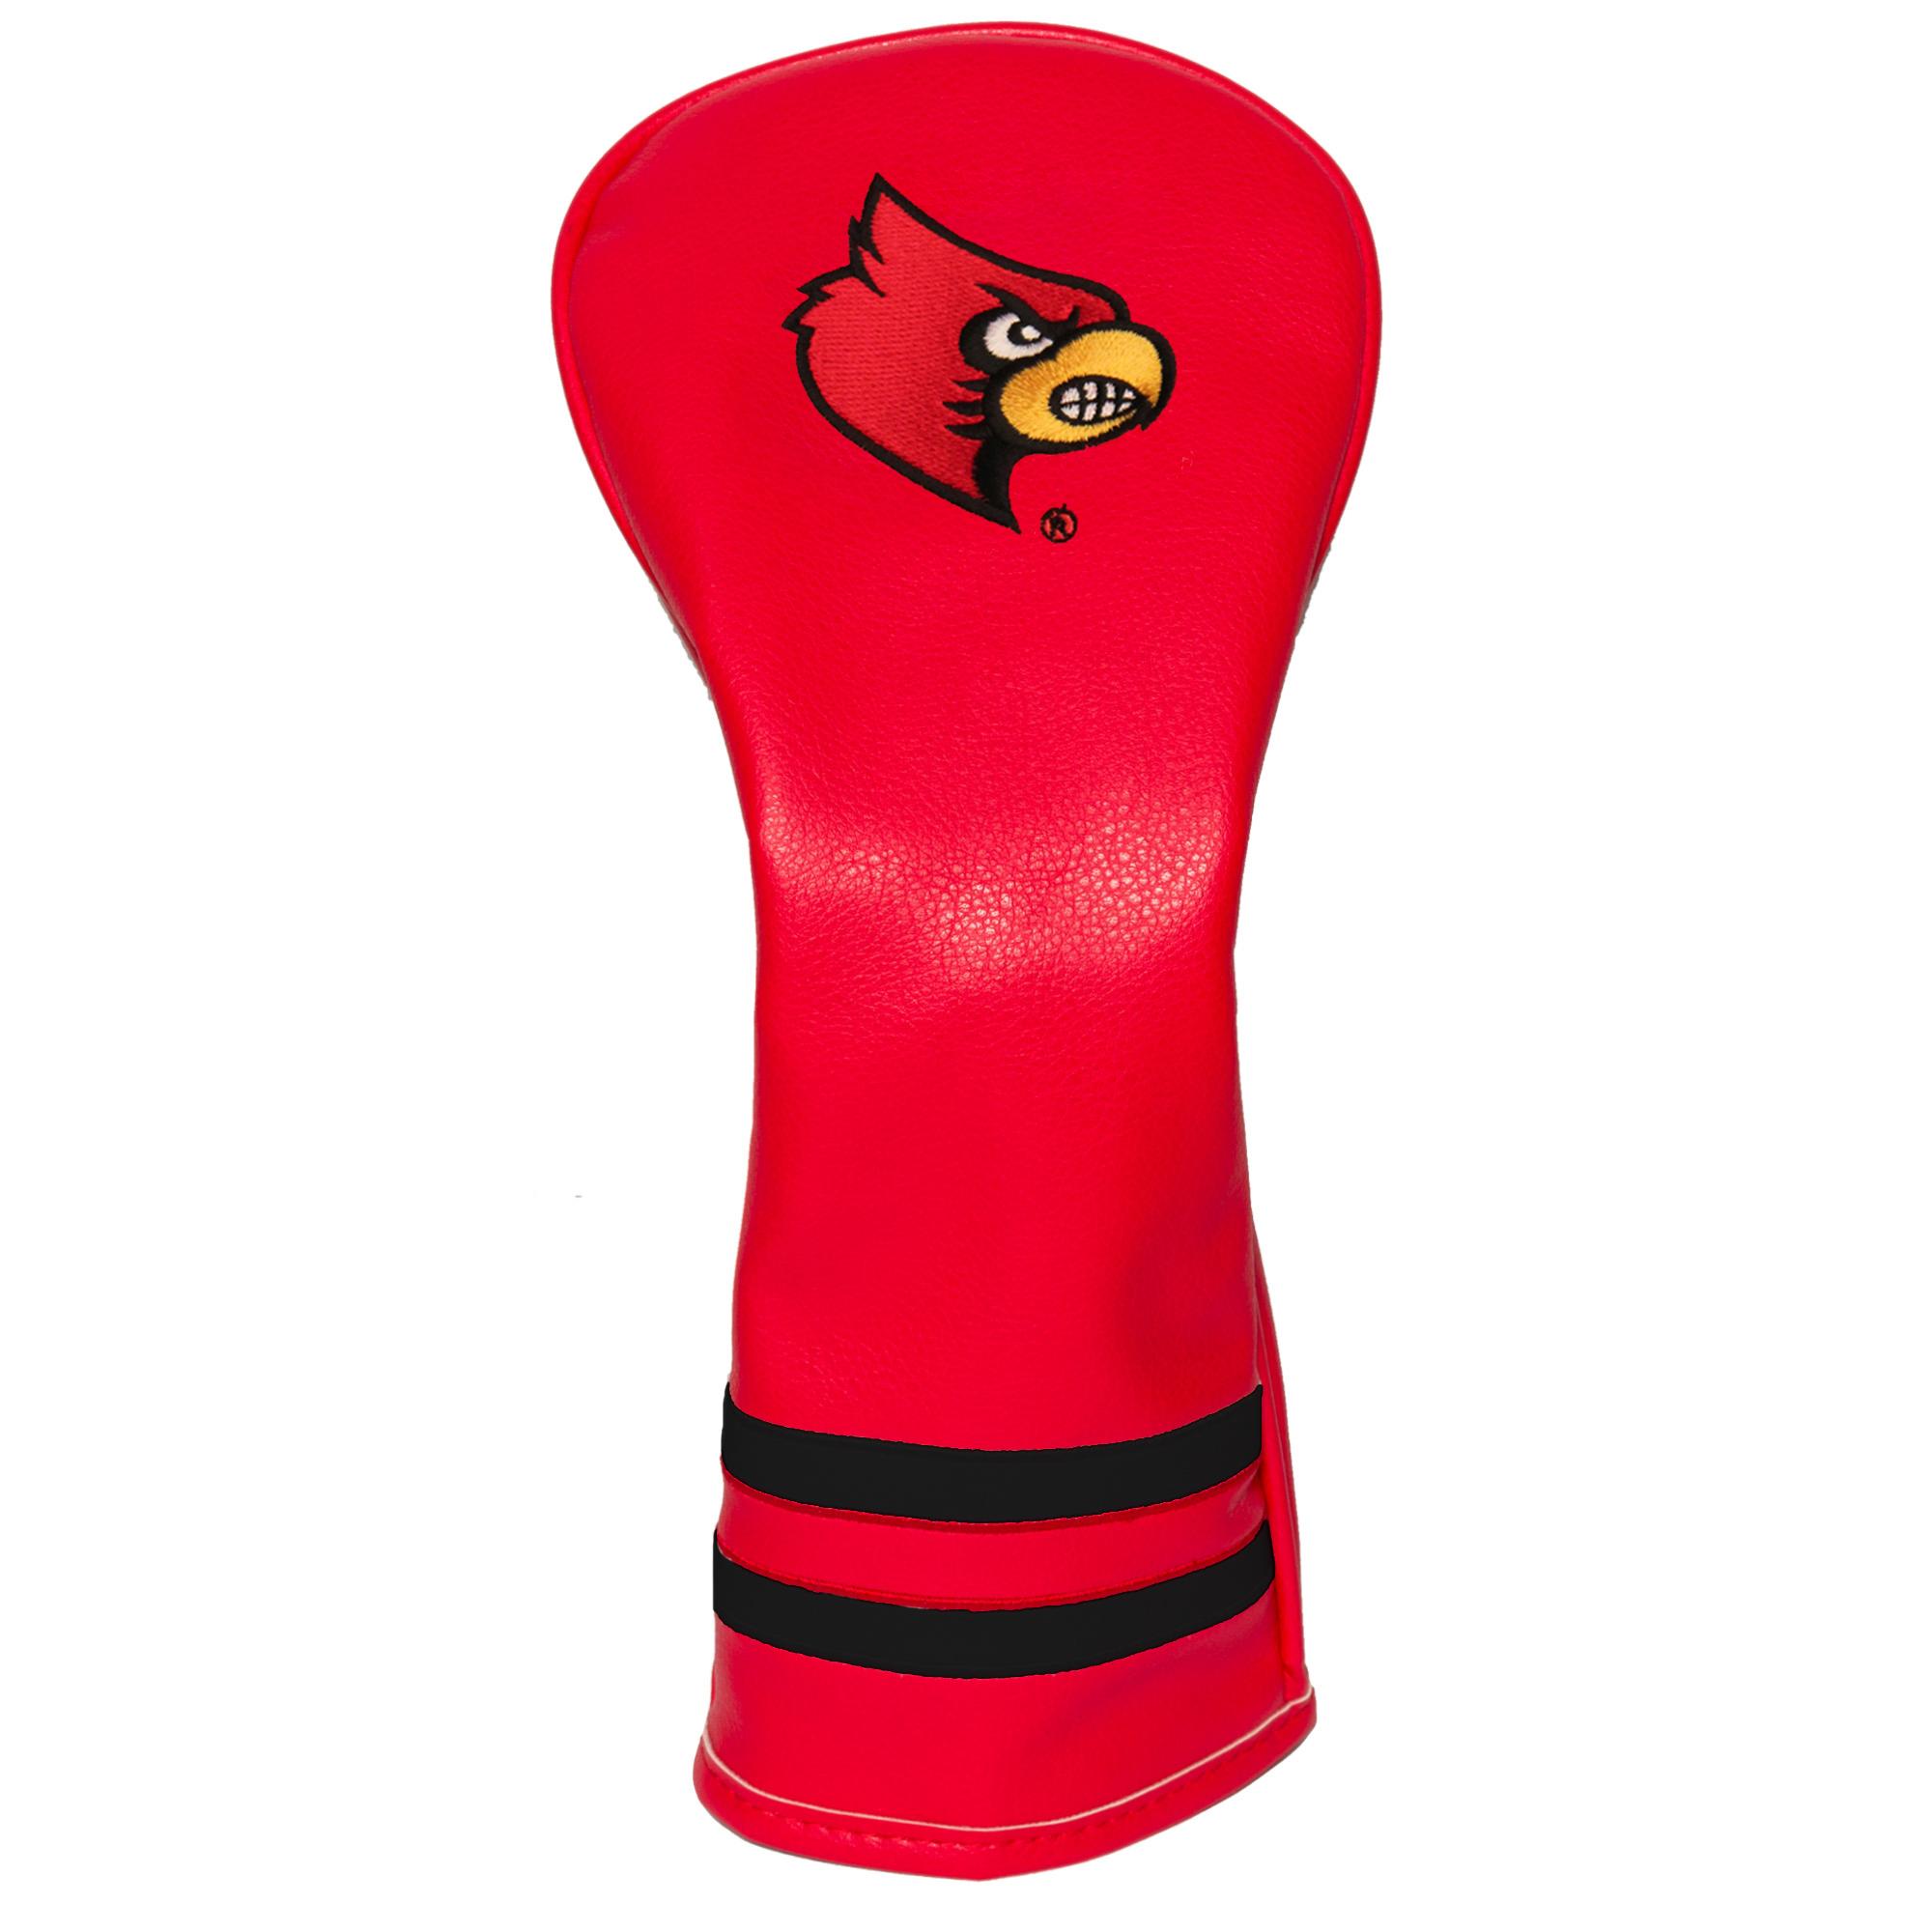 NEW NCAA Louisville Cardinals GOLF STAND BAG